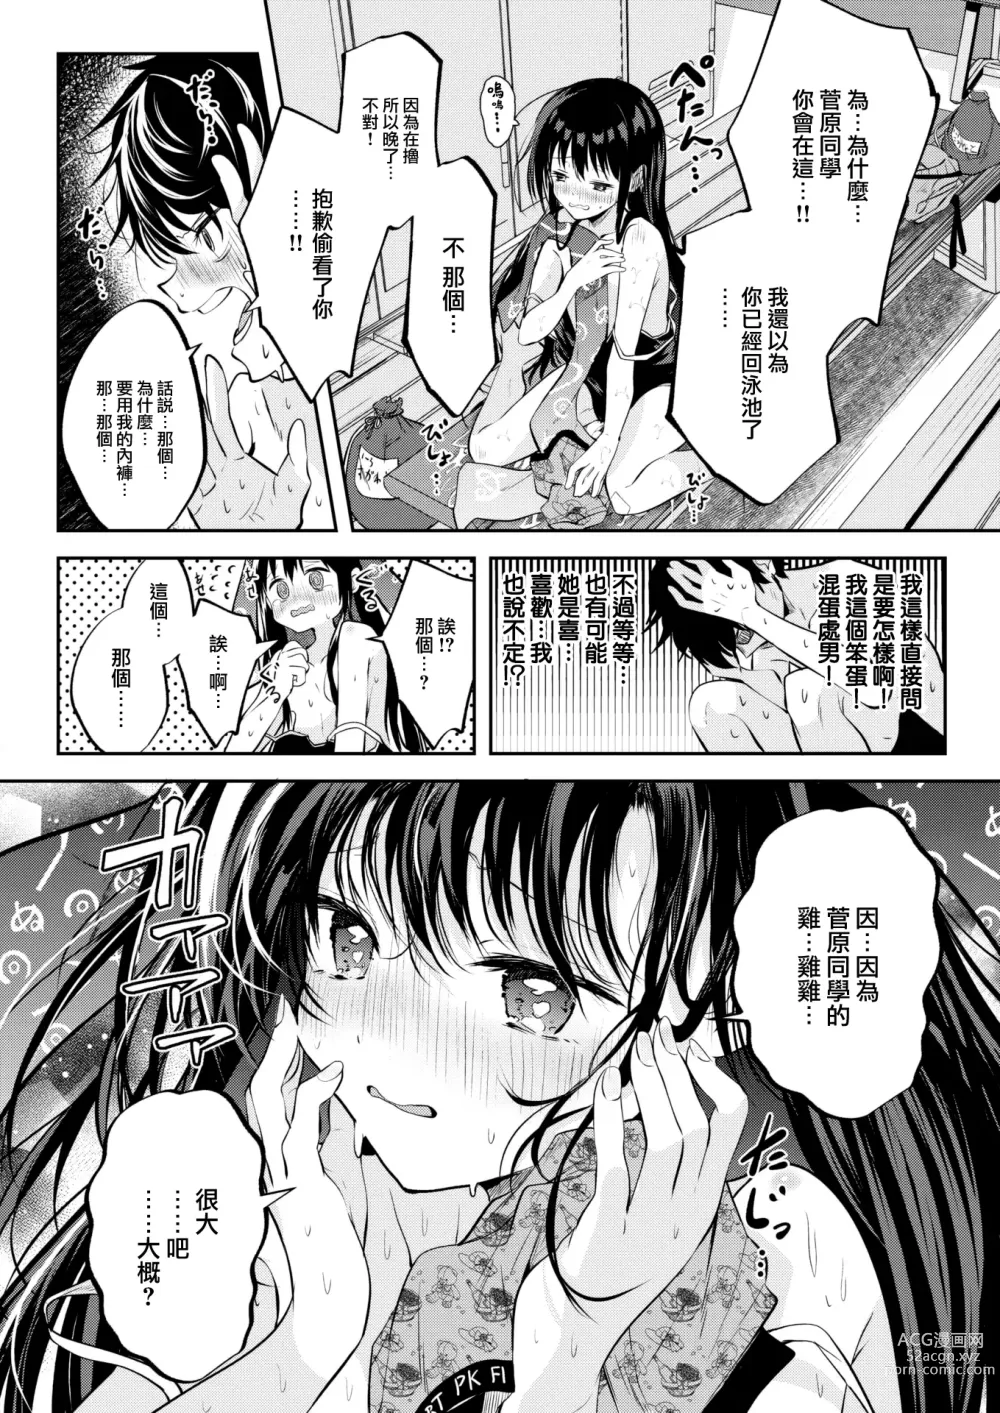 Page 9 of manga Otome no Binetsu wa Younetsu Shigoku.